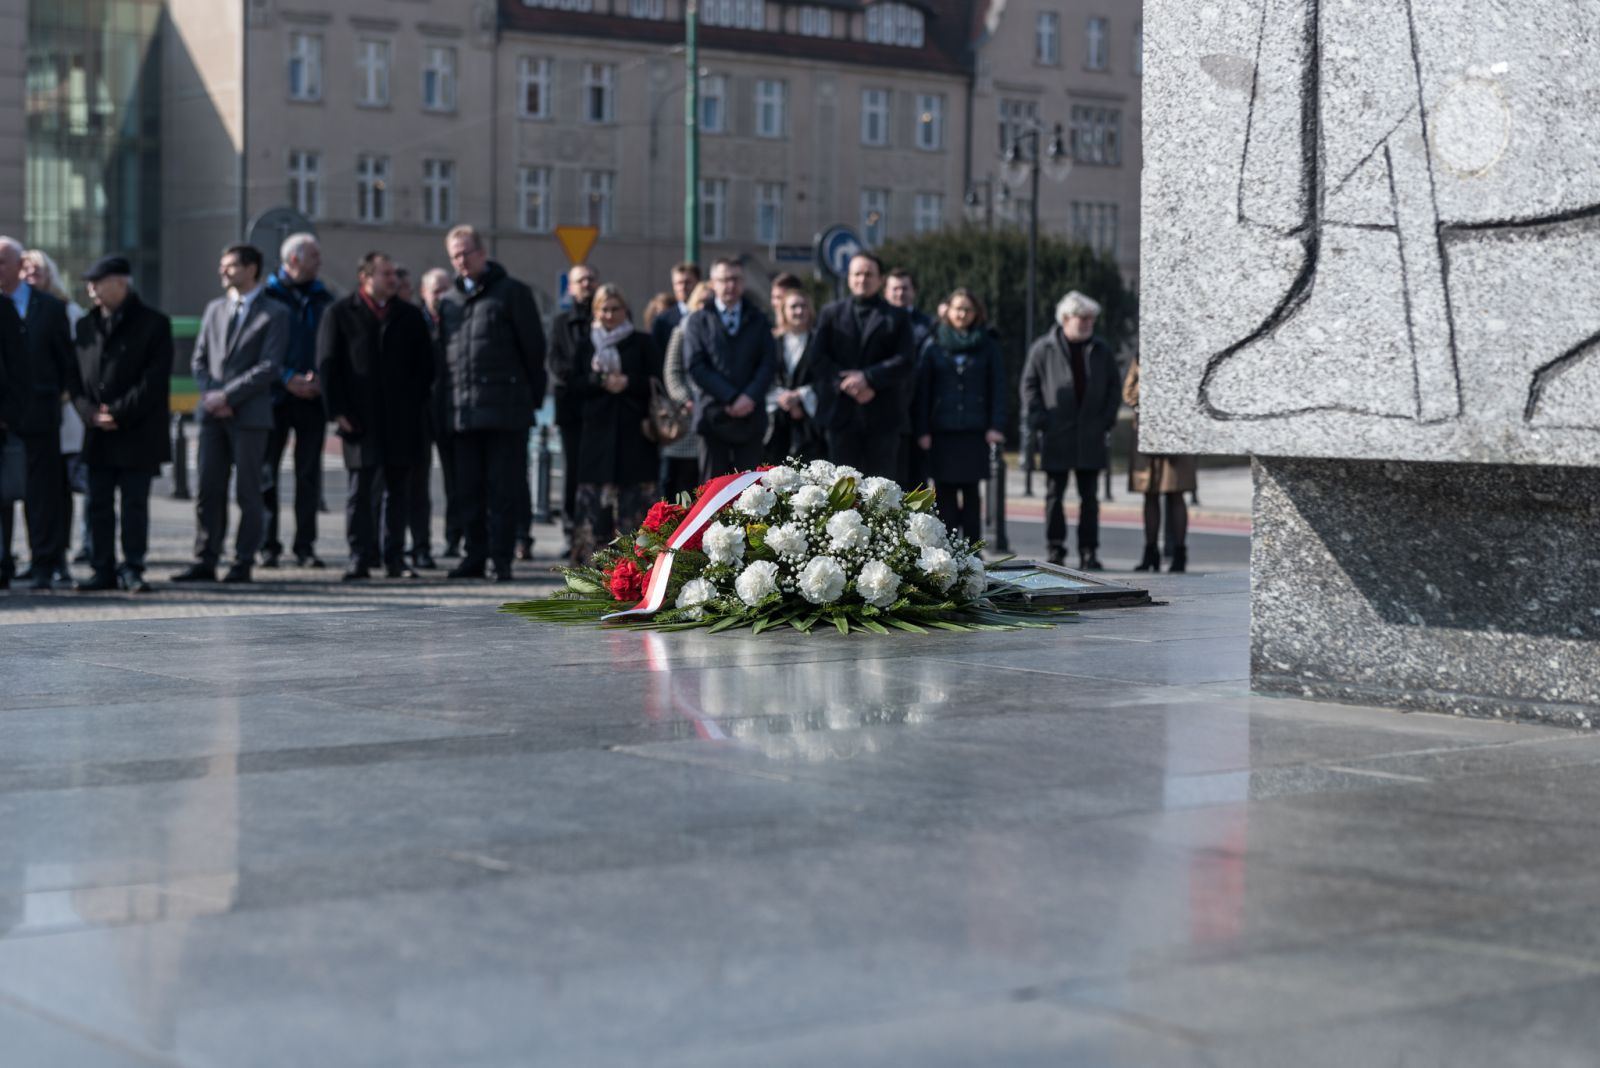 Kwiaty złożone pod pomnikiem Adama Mickiewicza